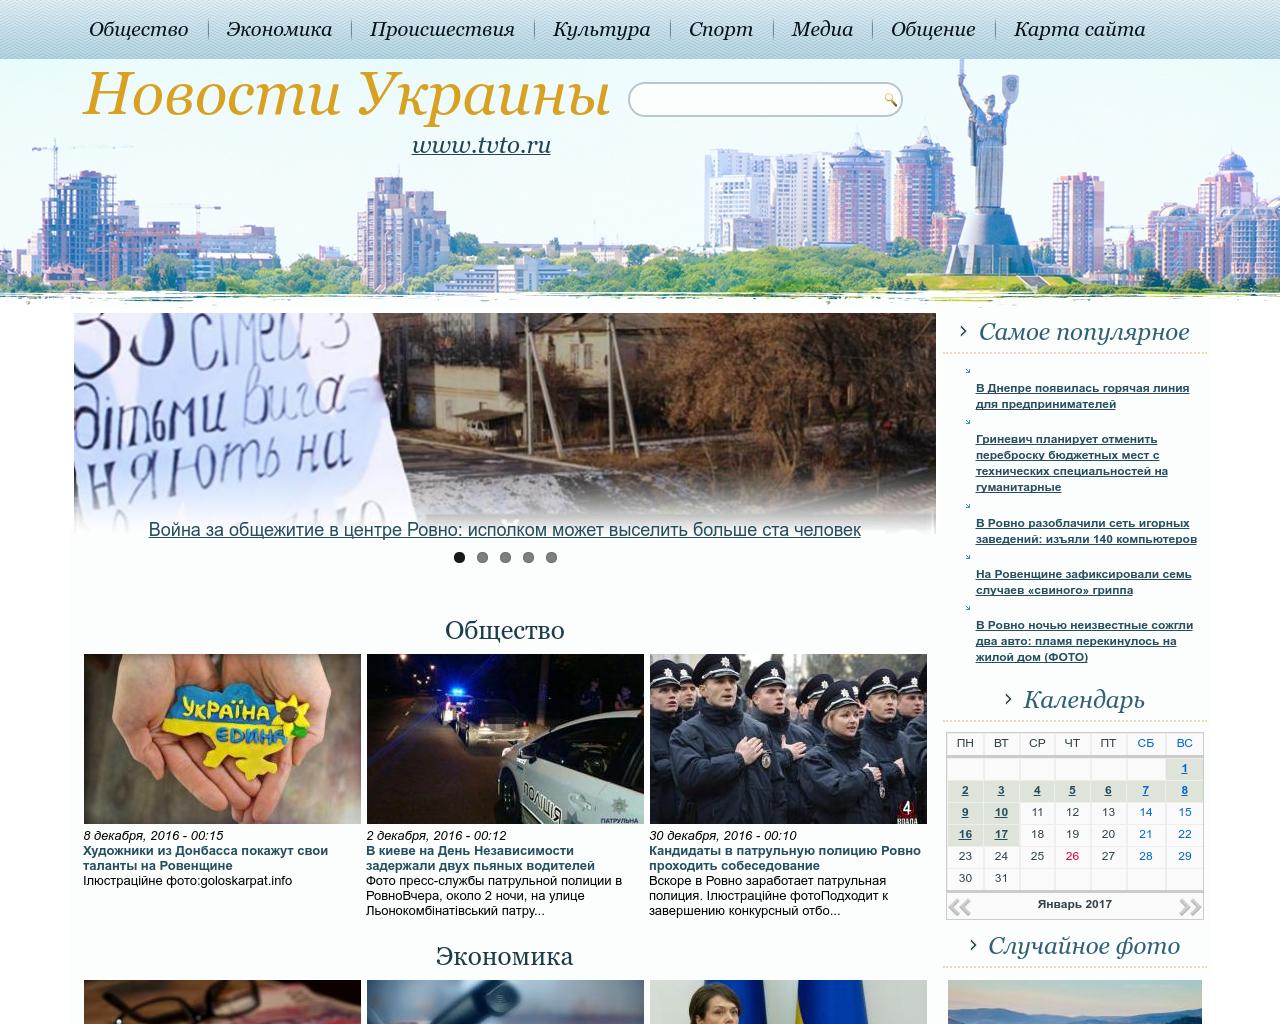 Изображение сайта tvto.ru в разрешении 1280x1024